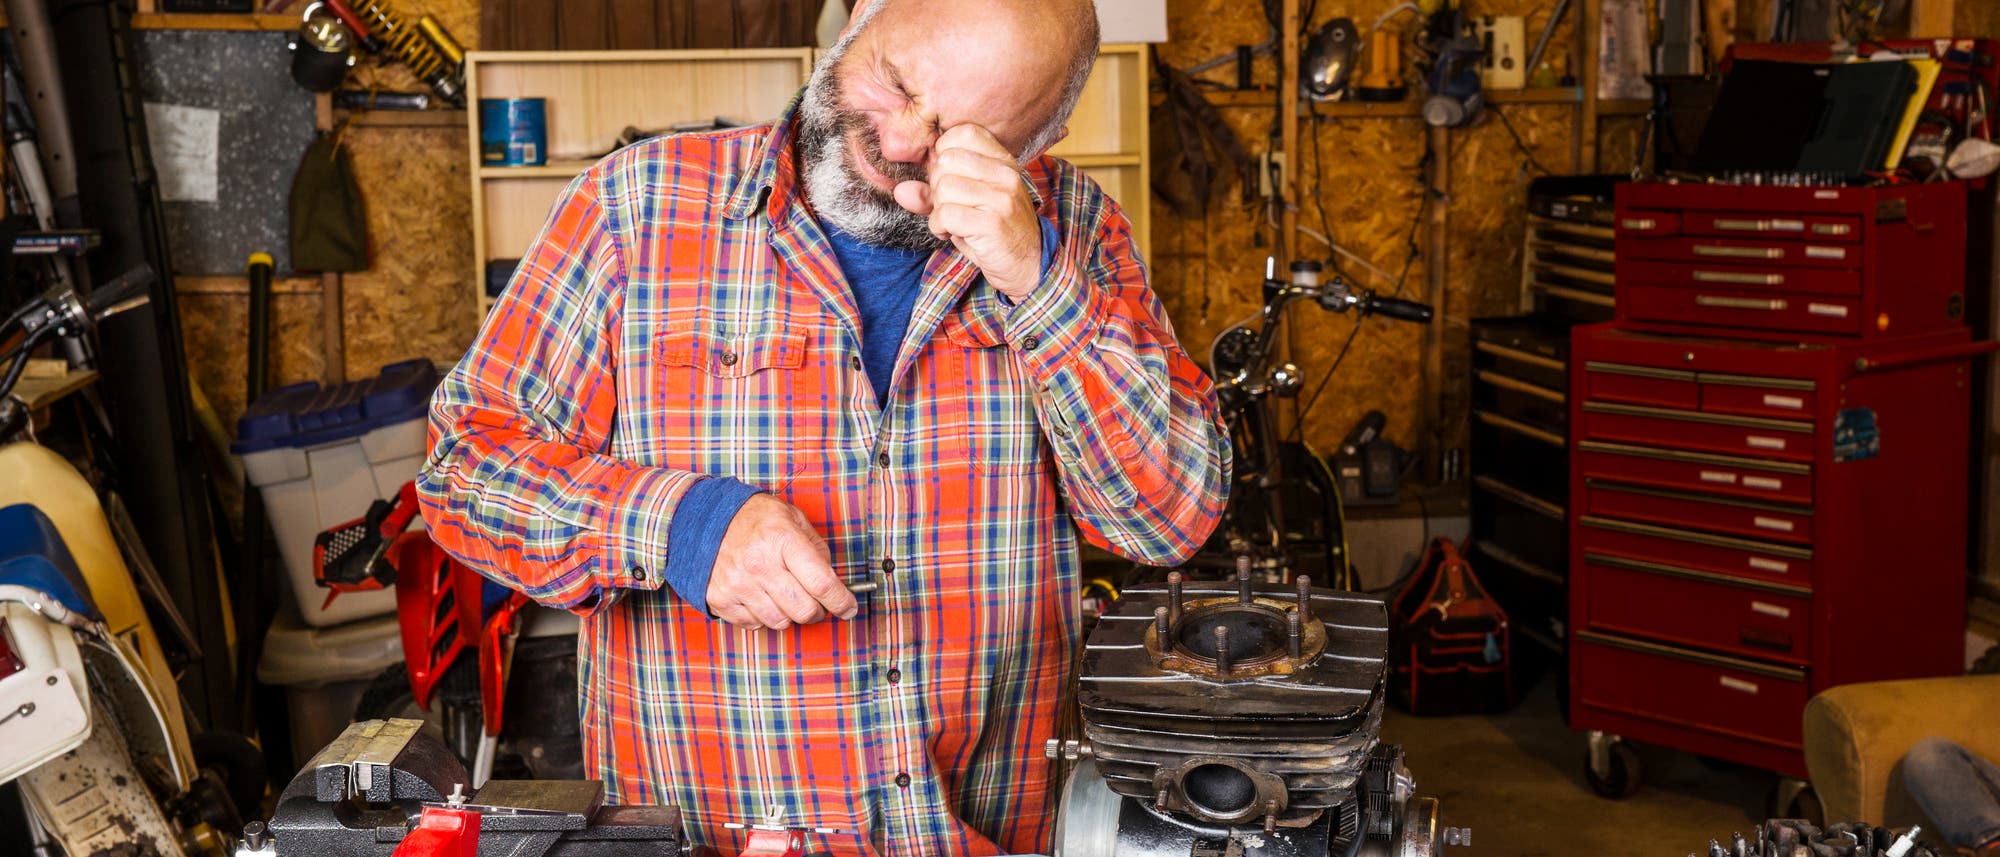 Ein Mann repariert etwas in seiner Werkstatt und hält sich sein linkes Auge mit der Hand zu, weil er vermutlich etwas ins Auge bekommen hat.